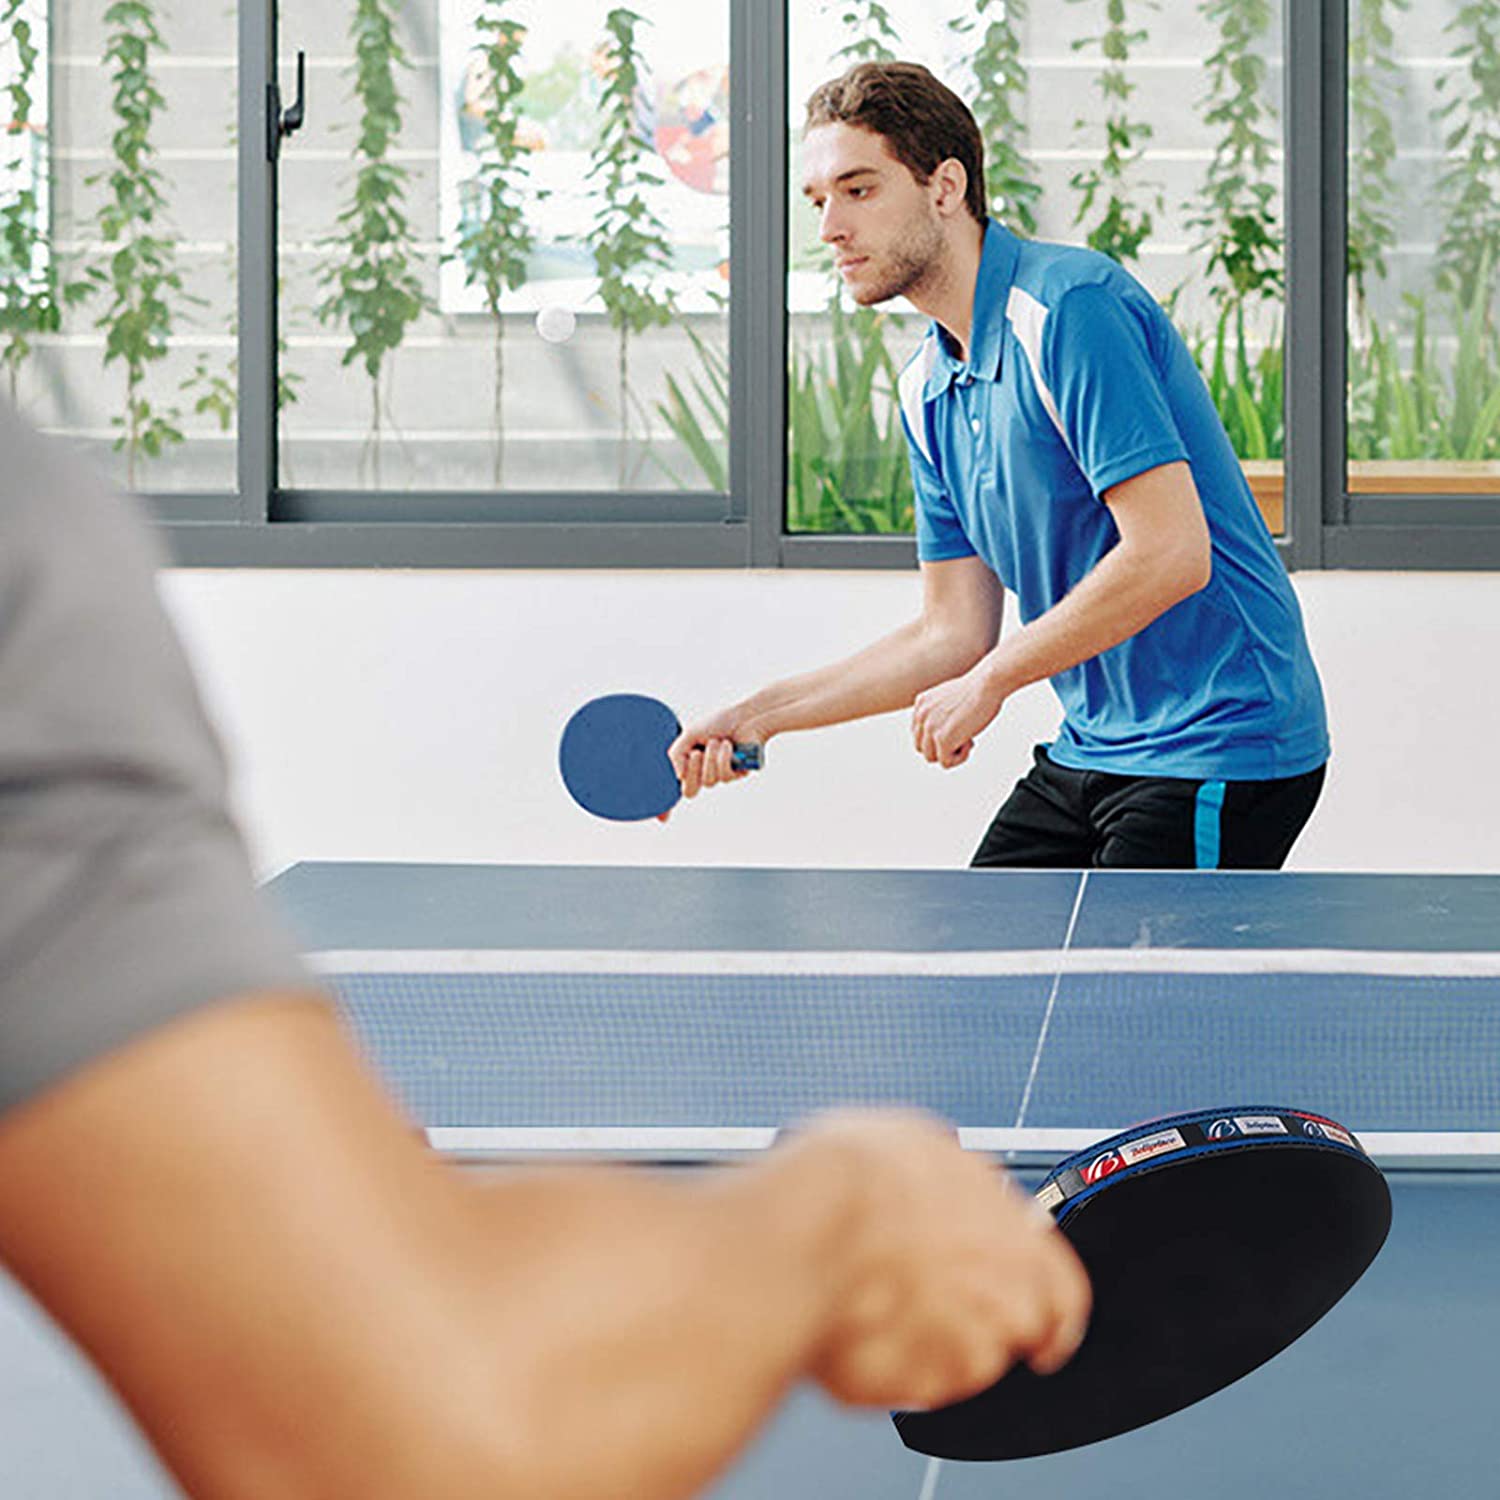  Red de ping pong, juega en cualquier lugar, red de tenis de mesa  retráctil para cualquier mesa, red de ping pong portátil ajustable para  cualquier mesa, soporte de viaje para deportes